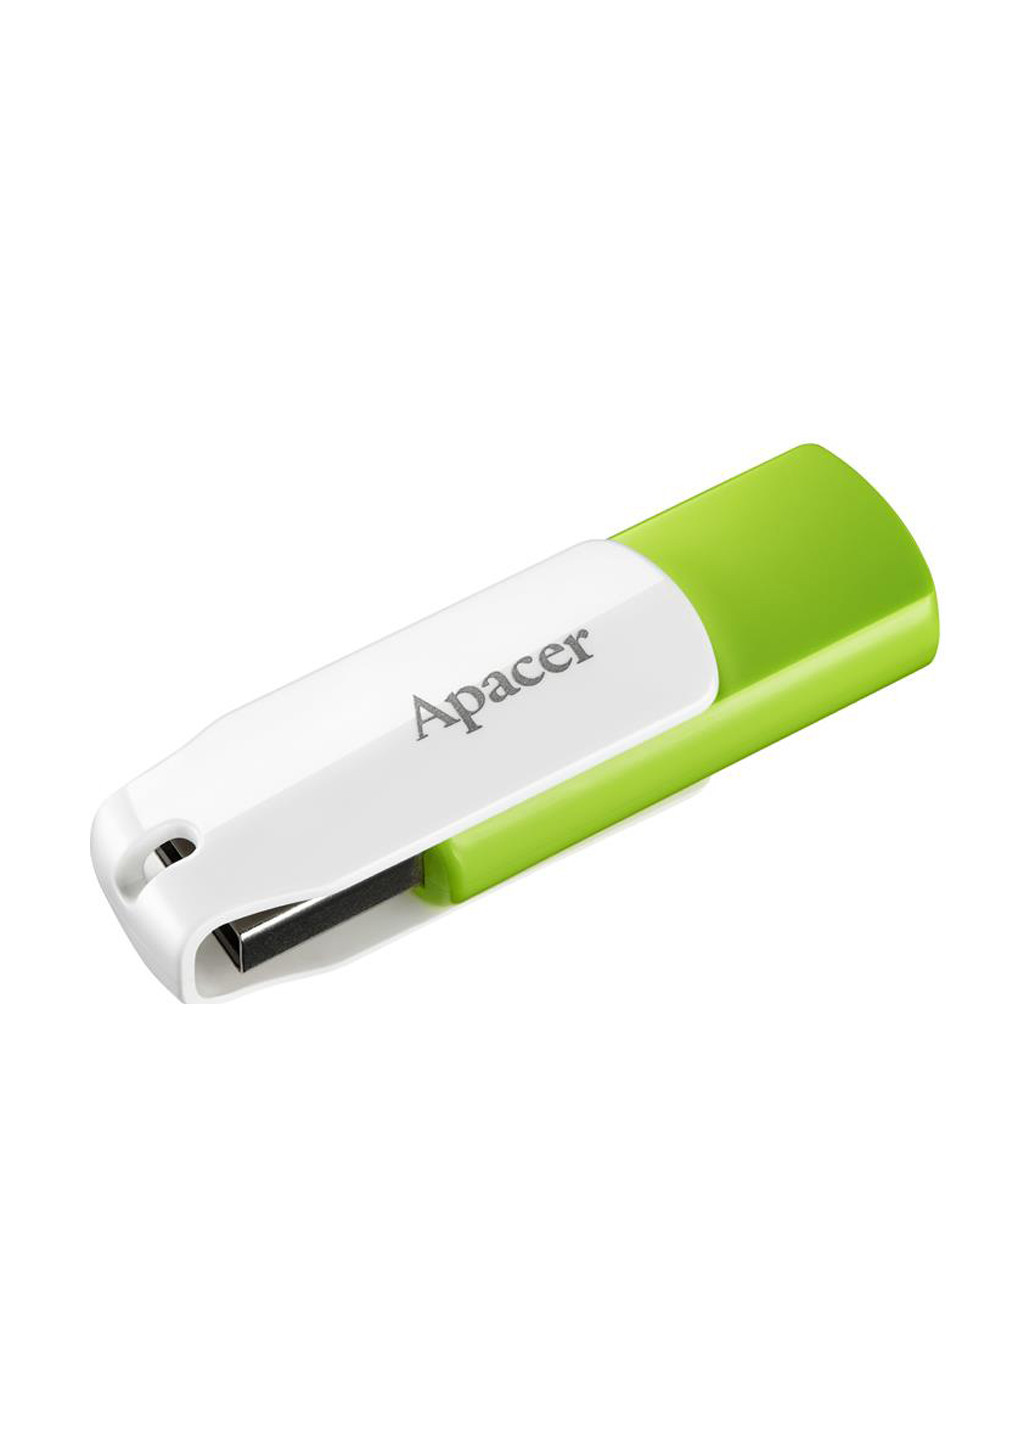 Флеш пам'ять USB AH335 32GB USB Green / White (AP32GAH335G-1) Apacer флеш память usb apacer ah335 32gb usb green/white (ap32gah335g-1) (135165469)